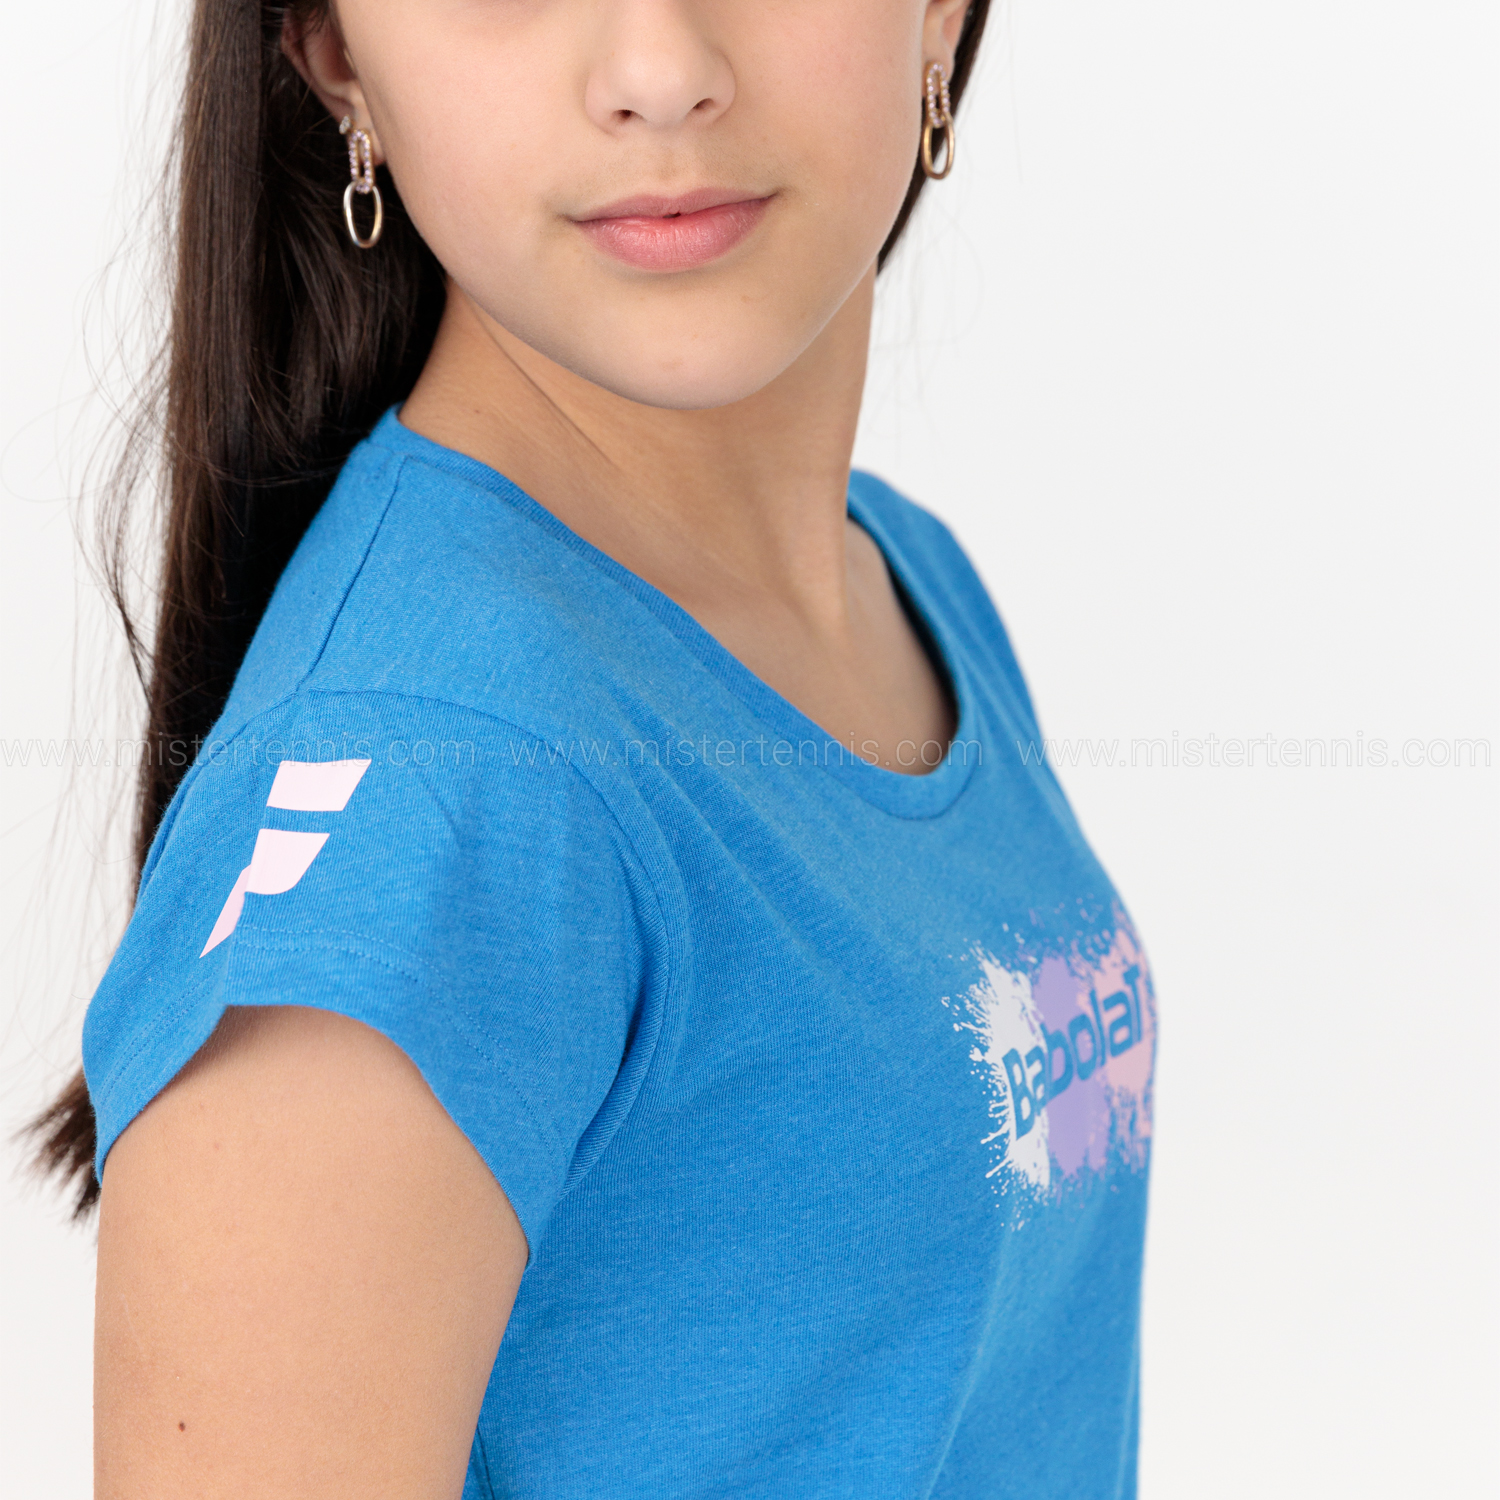 Babolat Exercise Camiseta Niña - French Blue Heather